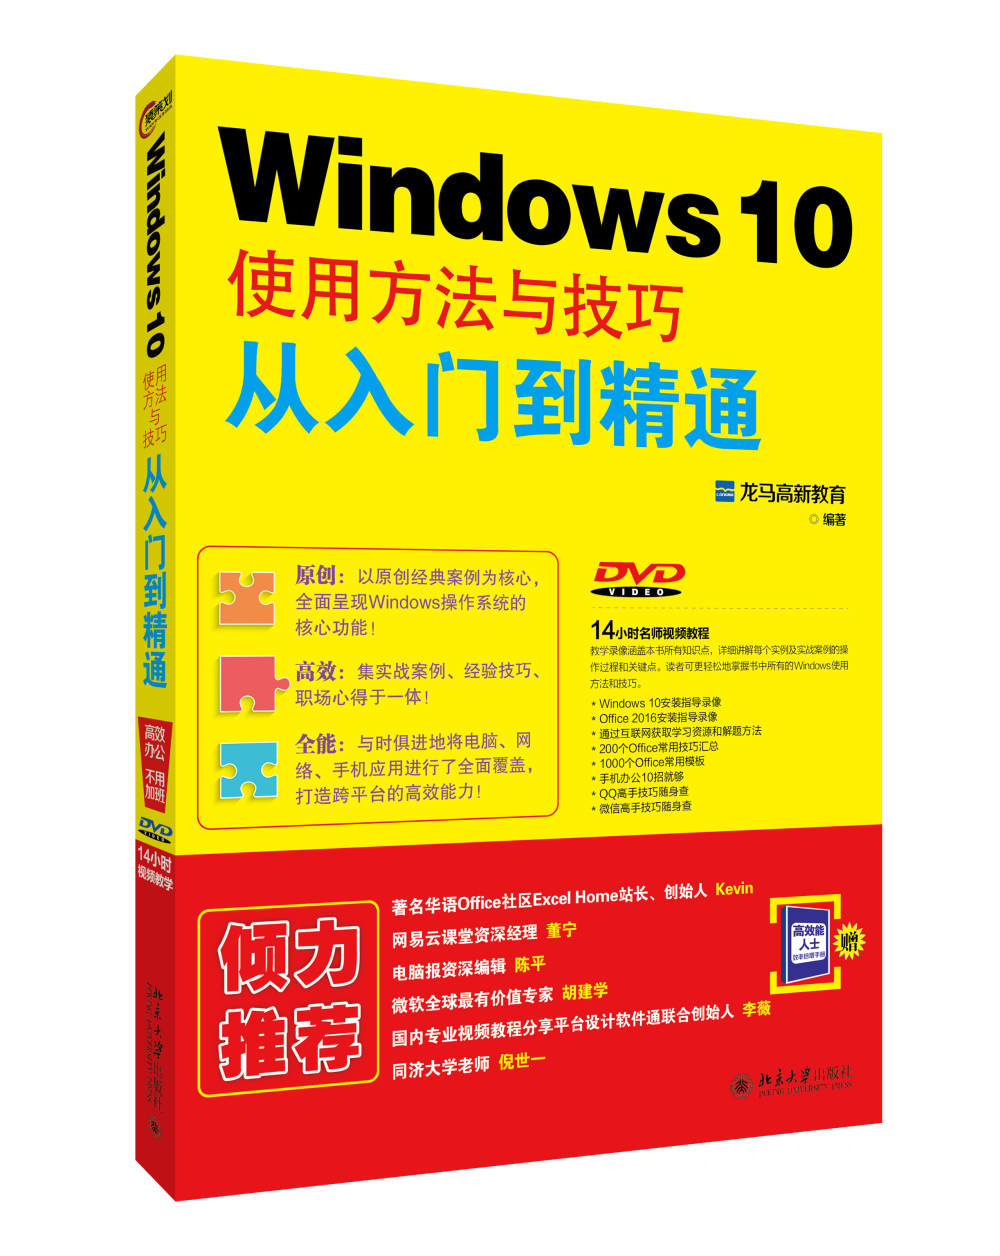 Windows 10使用方法与技巧从入门到精通 azw3格式下载